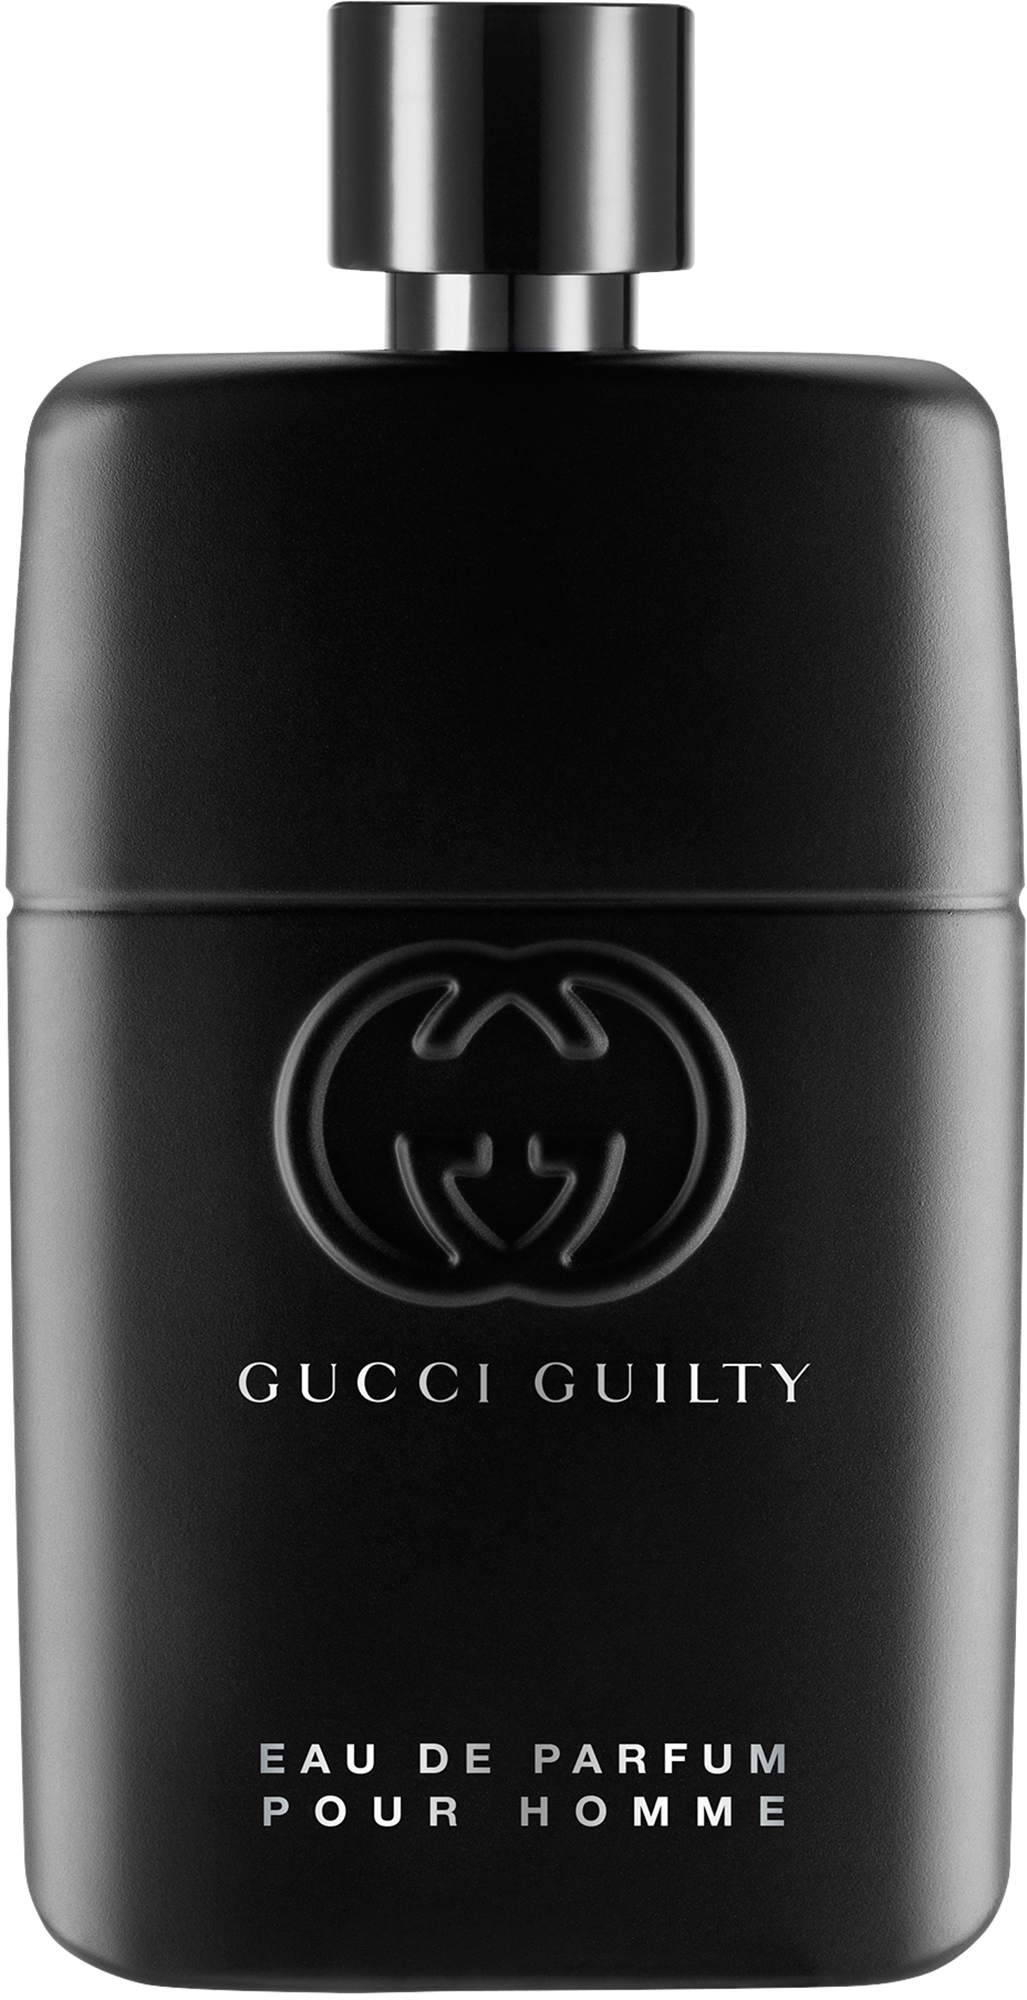 50 De Pour Parfum Guilty ml Gucci Homme Eau